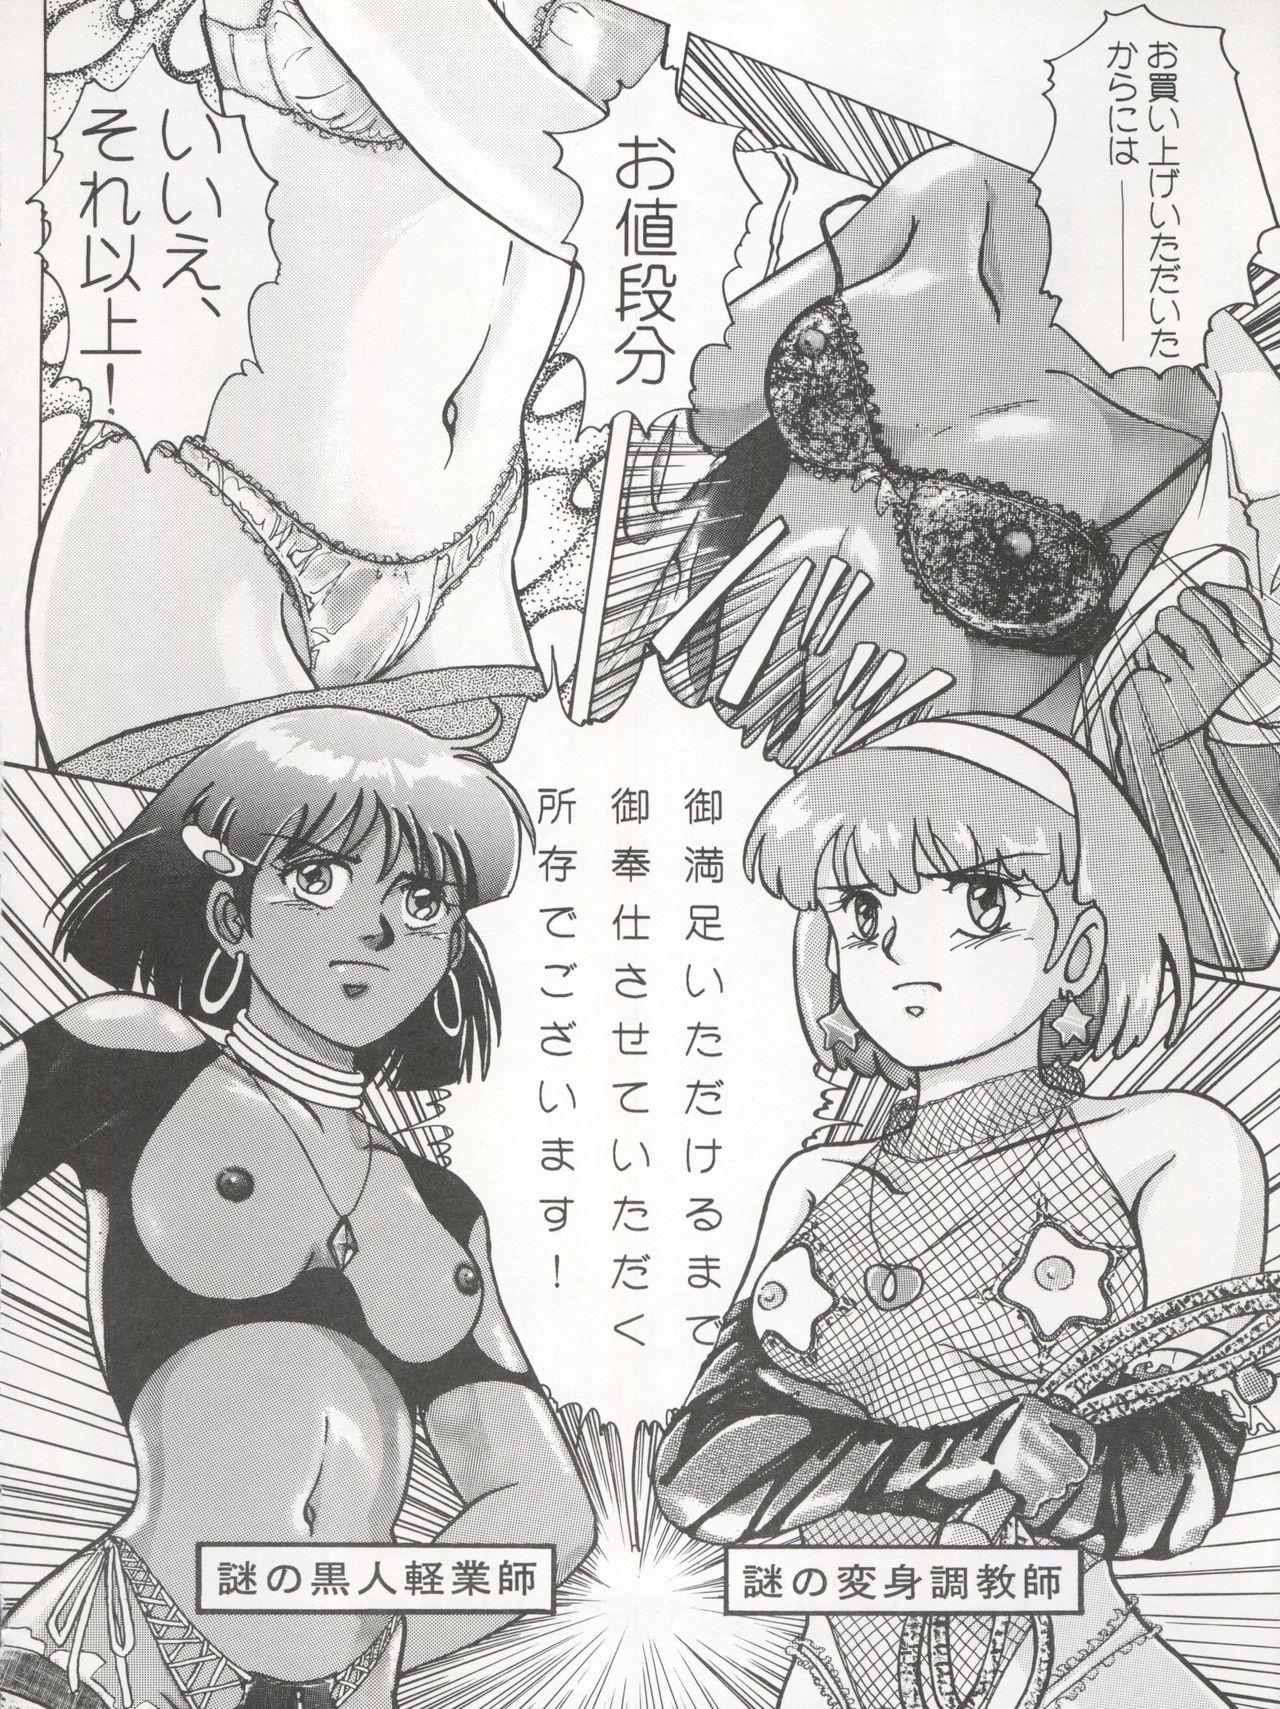 Booty 逮捕されちゃうぞ - Fushigi no umi no nadia Youre under arrest Minky momo 3x3 eyes Tittyfuck - Page 4